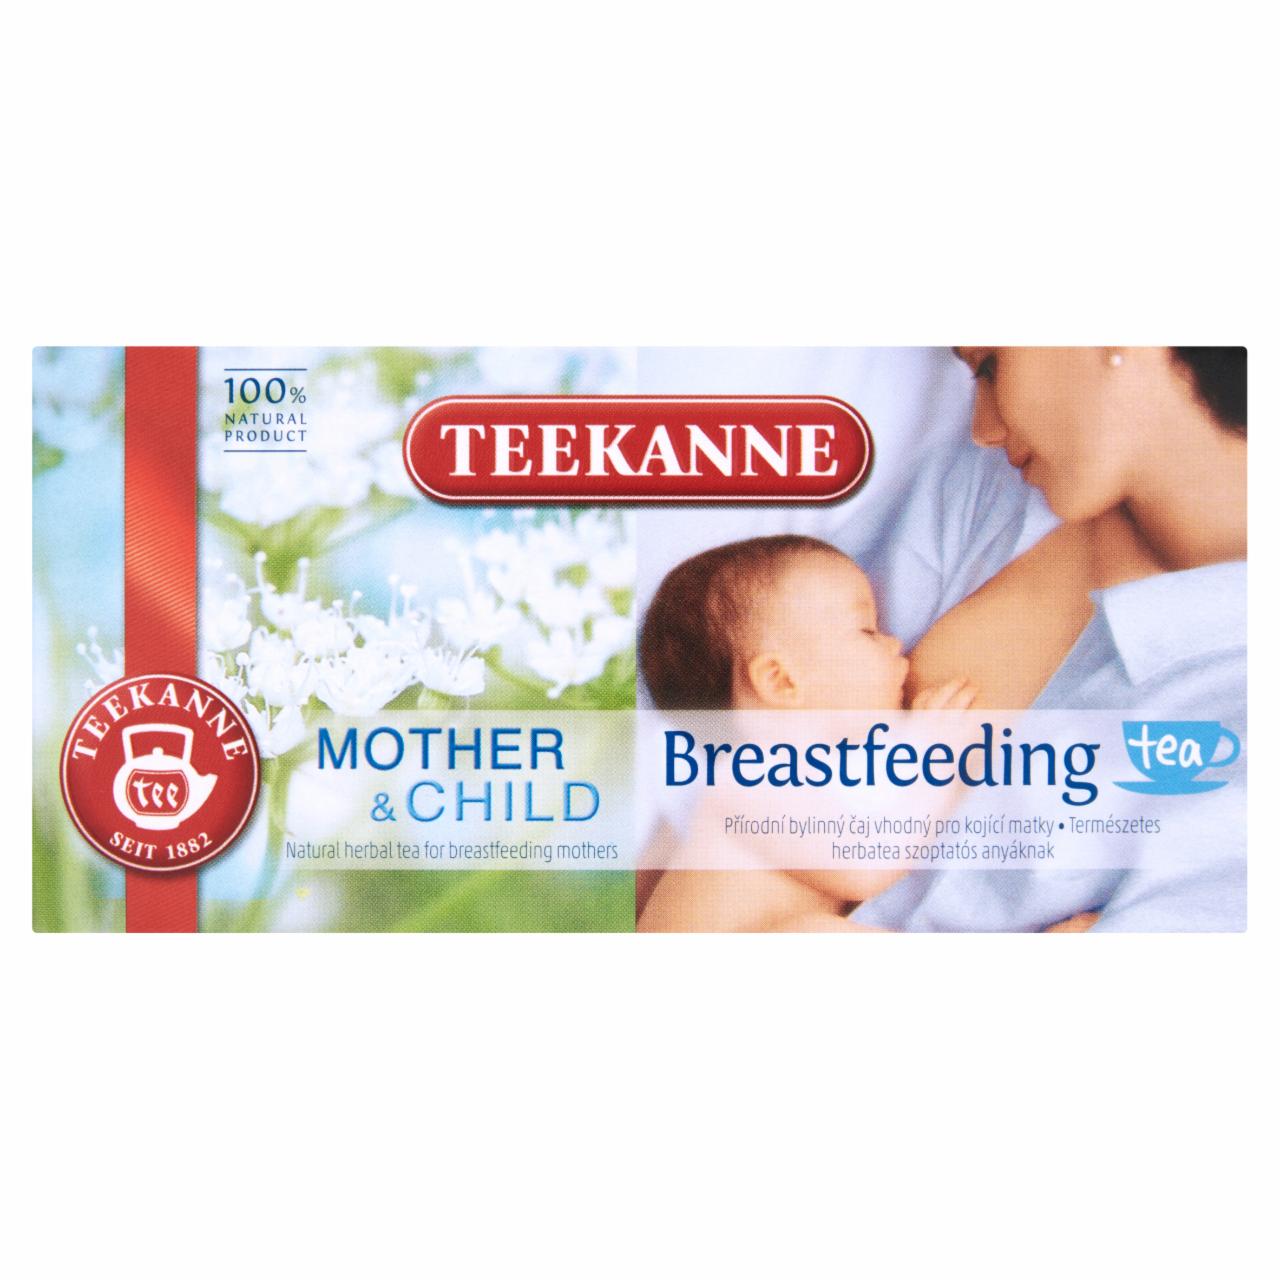 Képek - Teekanne Mother & Child Breastfeeding Tea természetes herbatea szoptatós anyáknak 20 filter 36 g